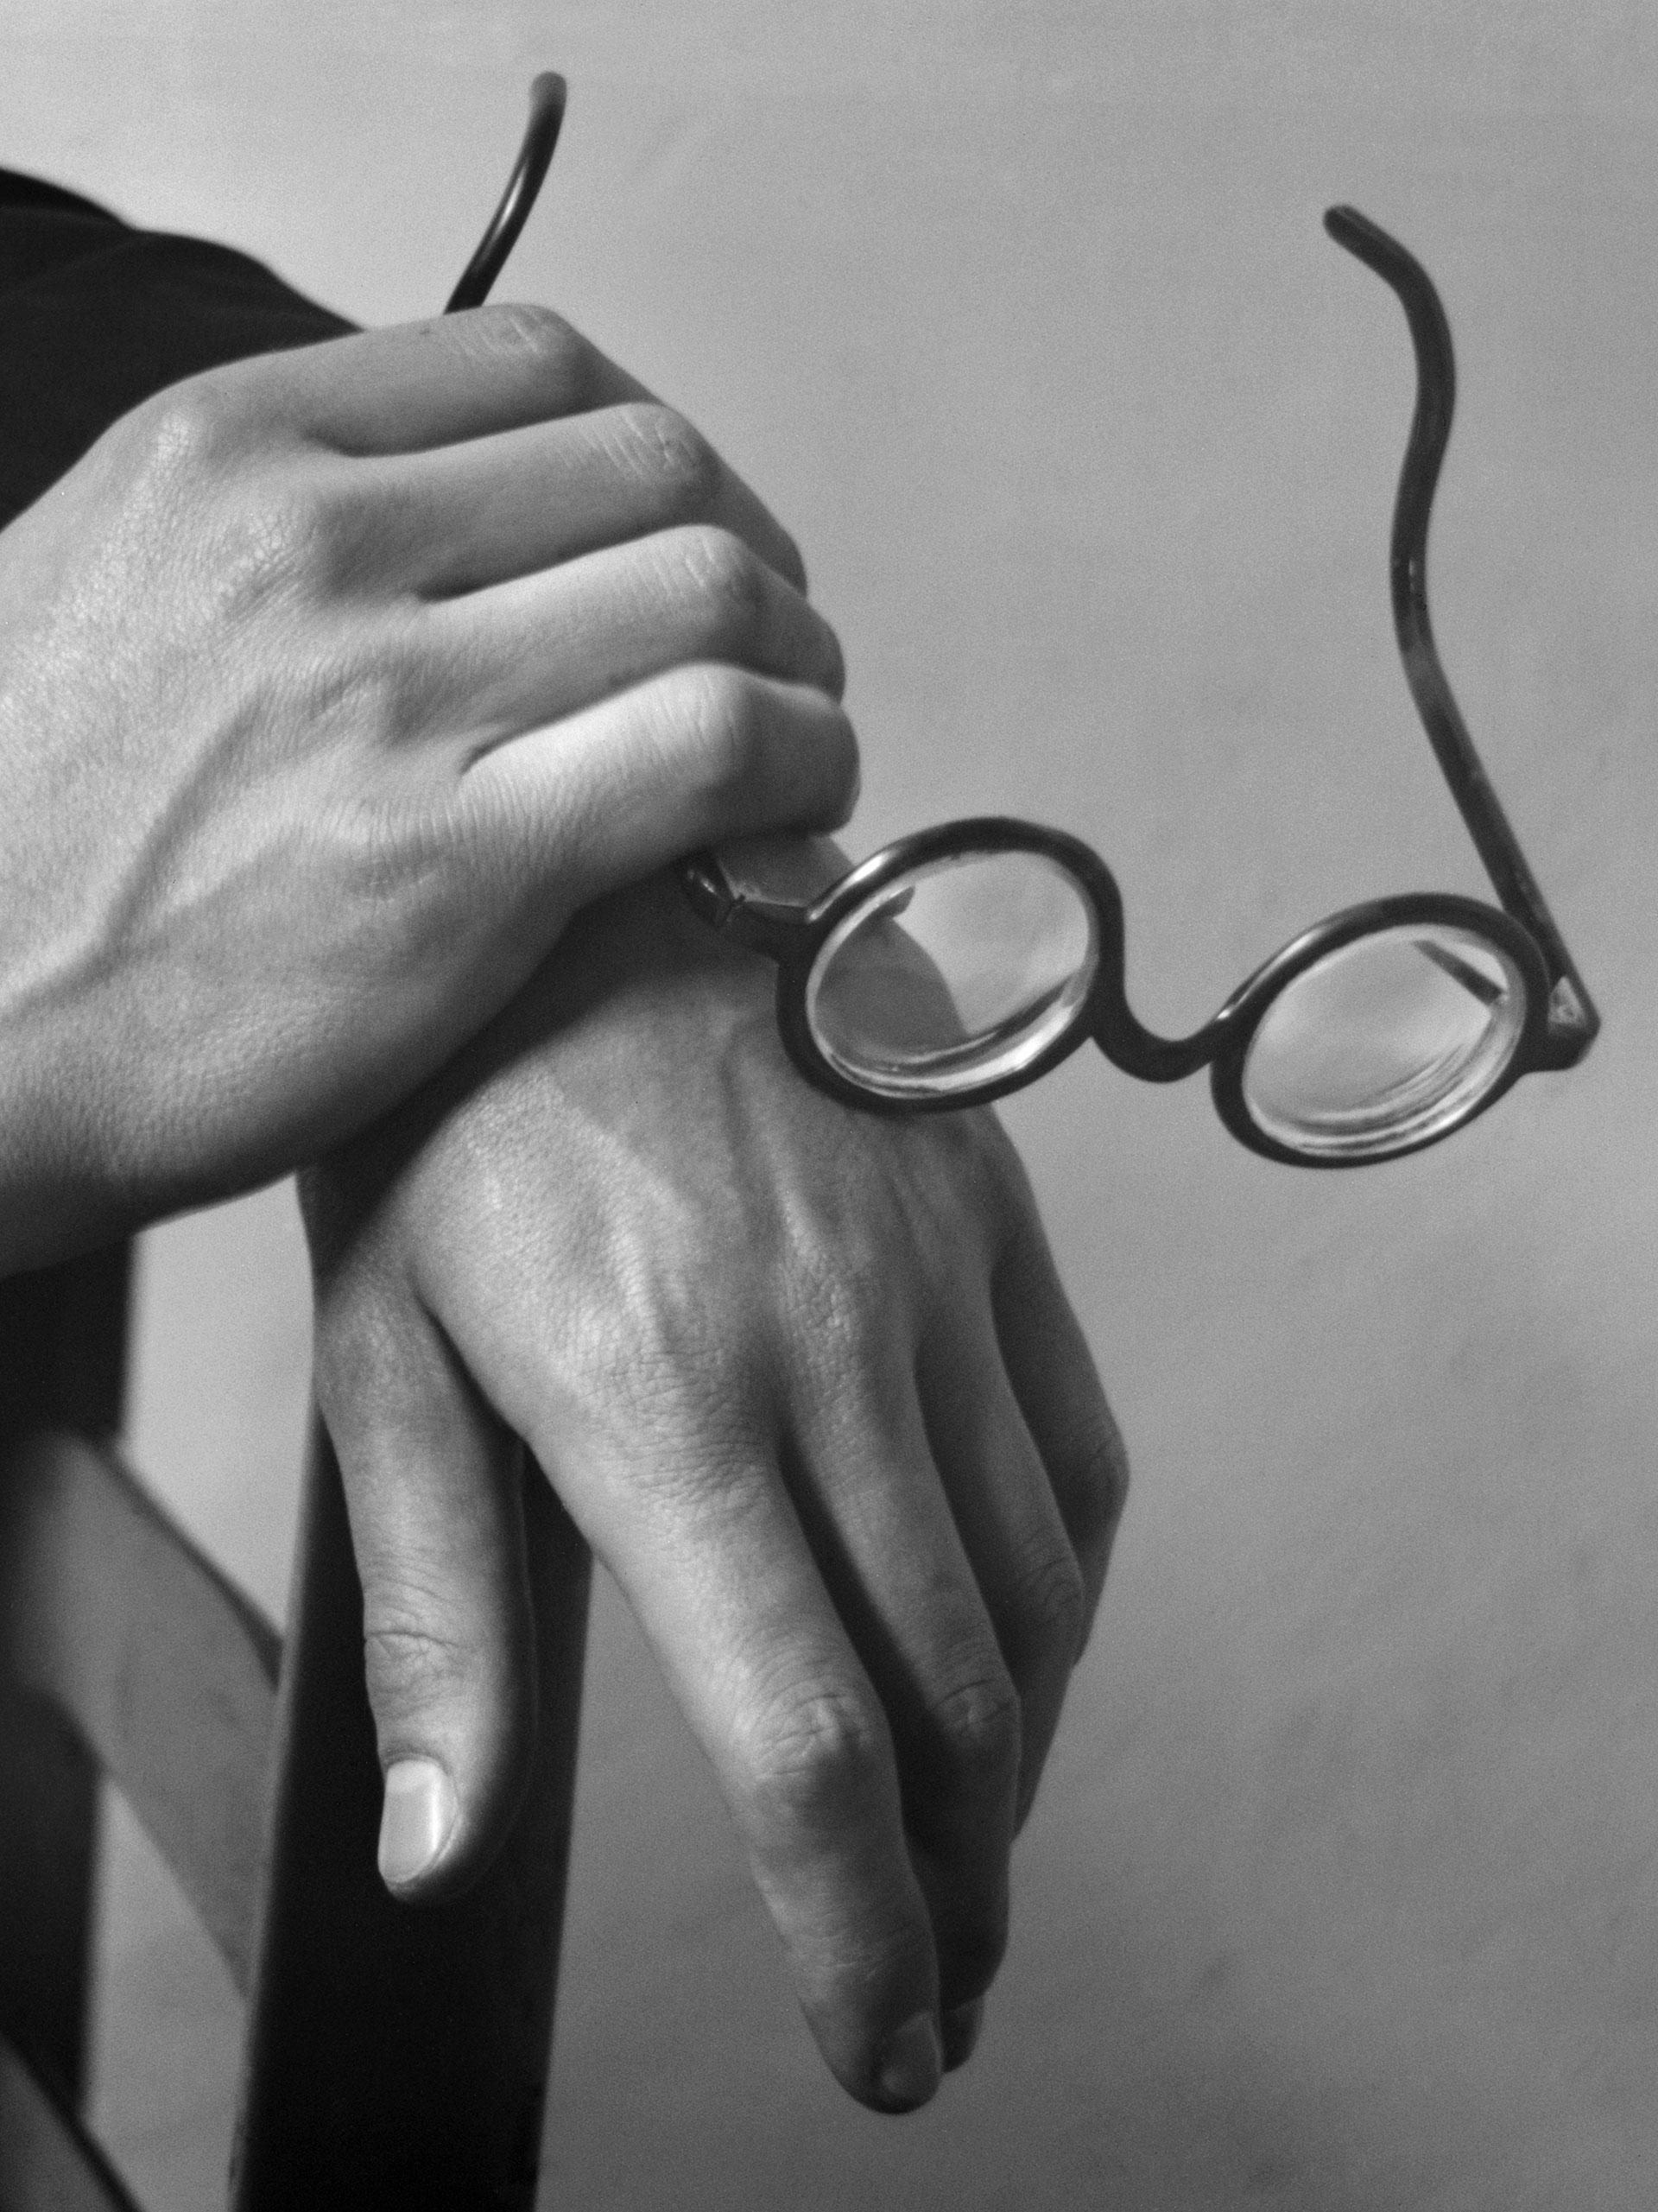 photographie de kertesz de mains tenant des lunettes 